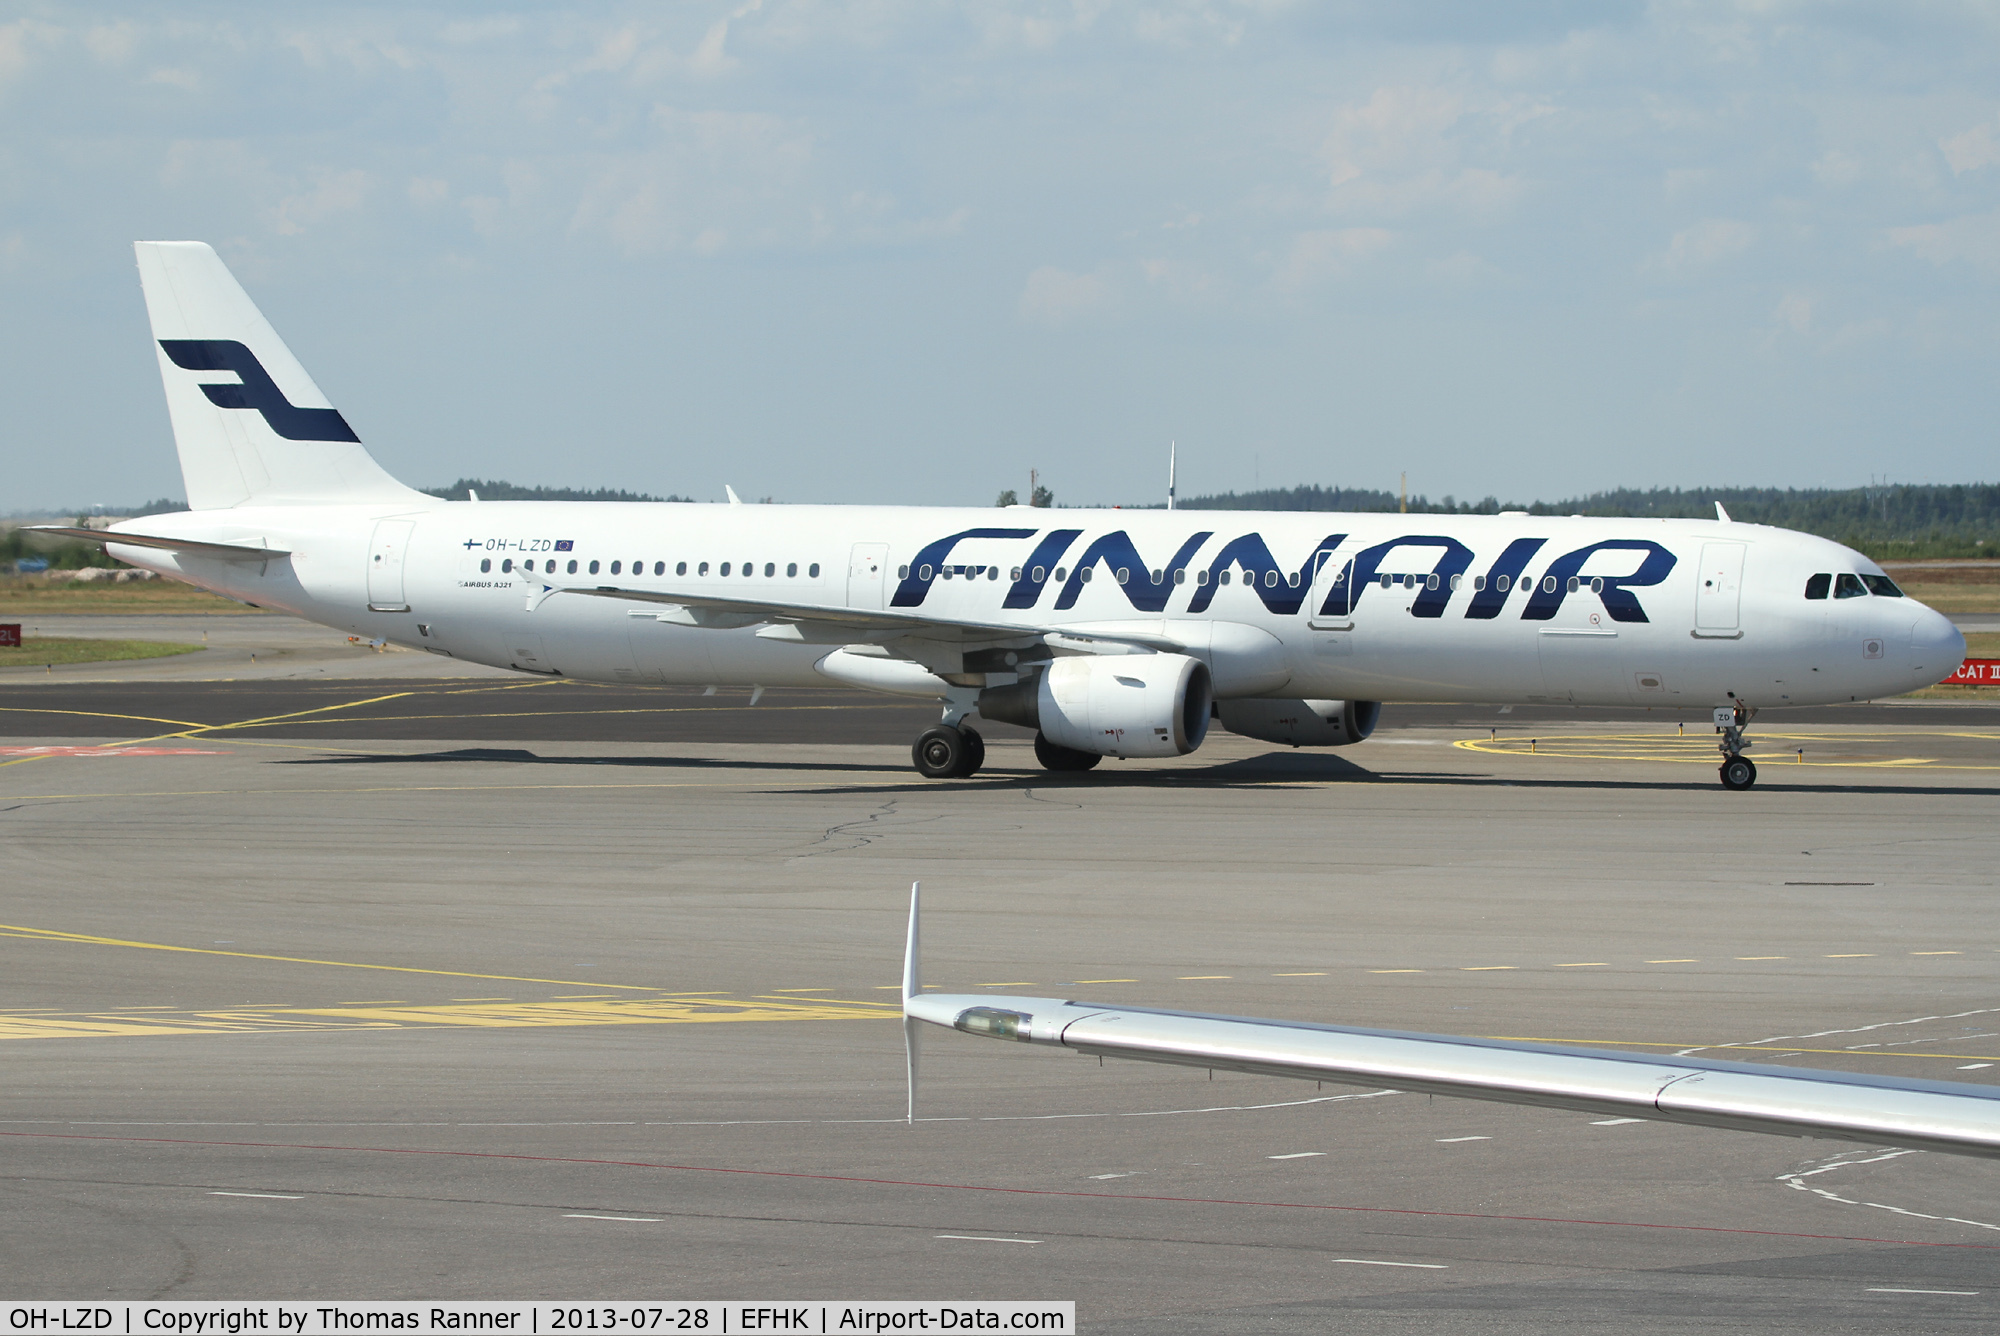 OH-LZD, 2000 Airbus A321-211 C/N 1241, Finnair A321